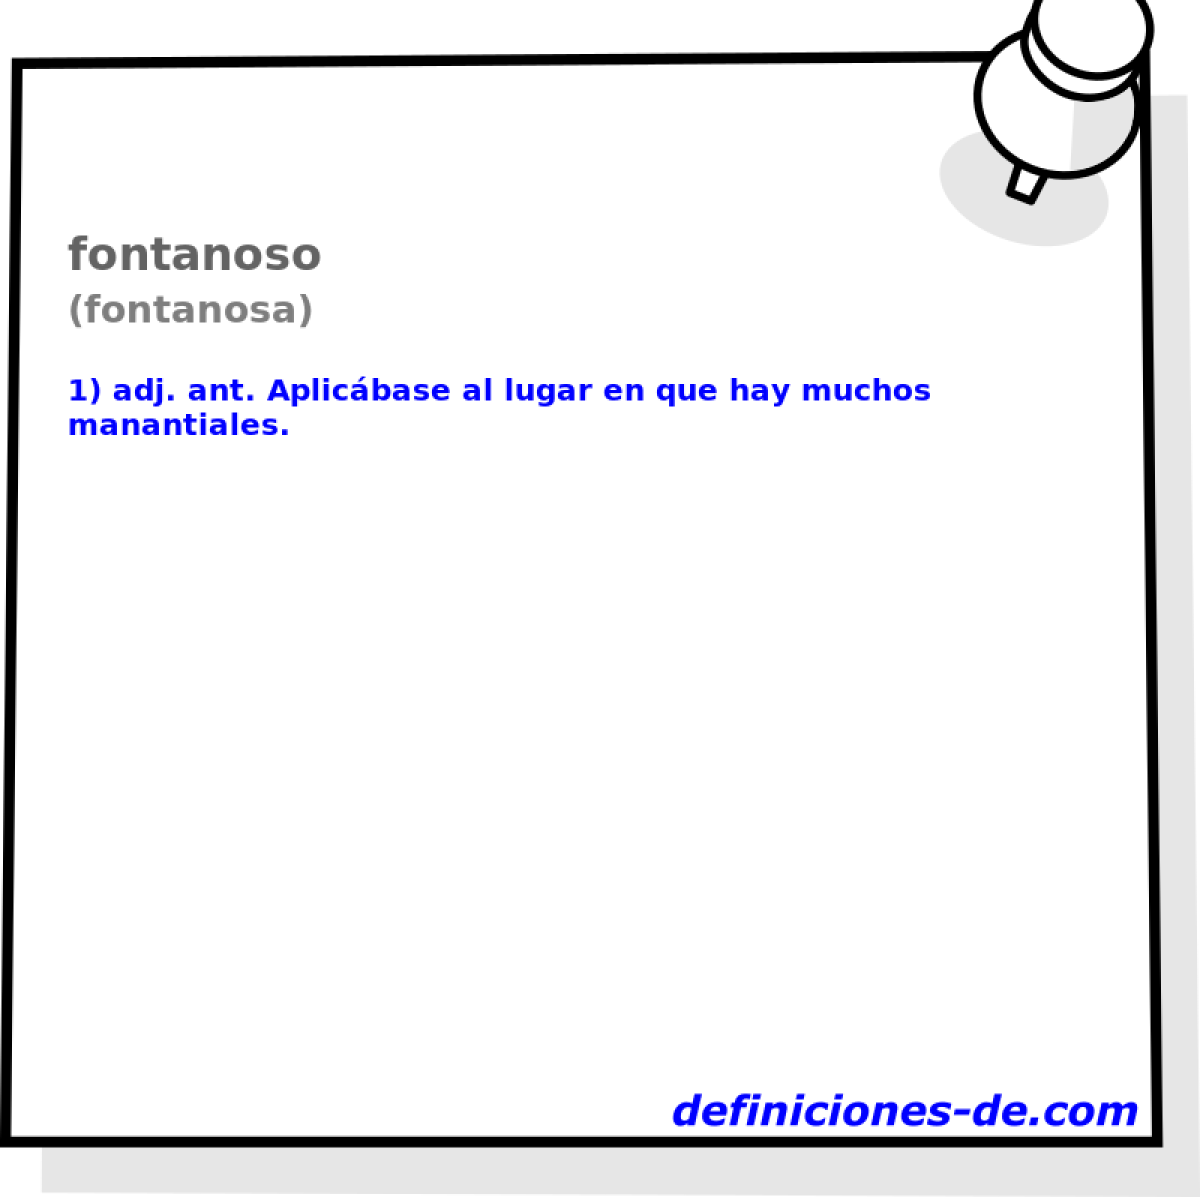 fontanoso (fontanosa)